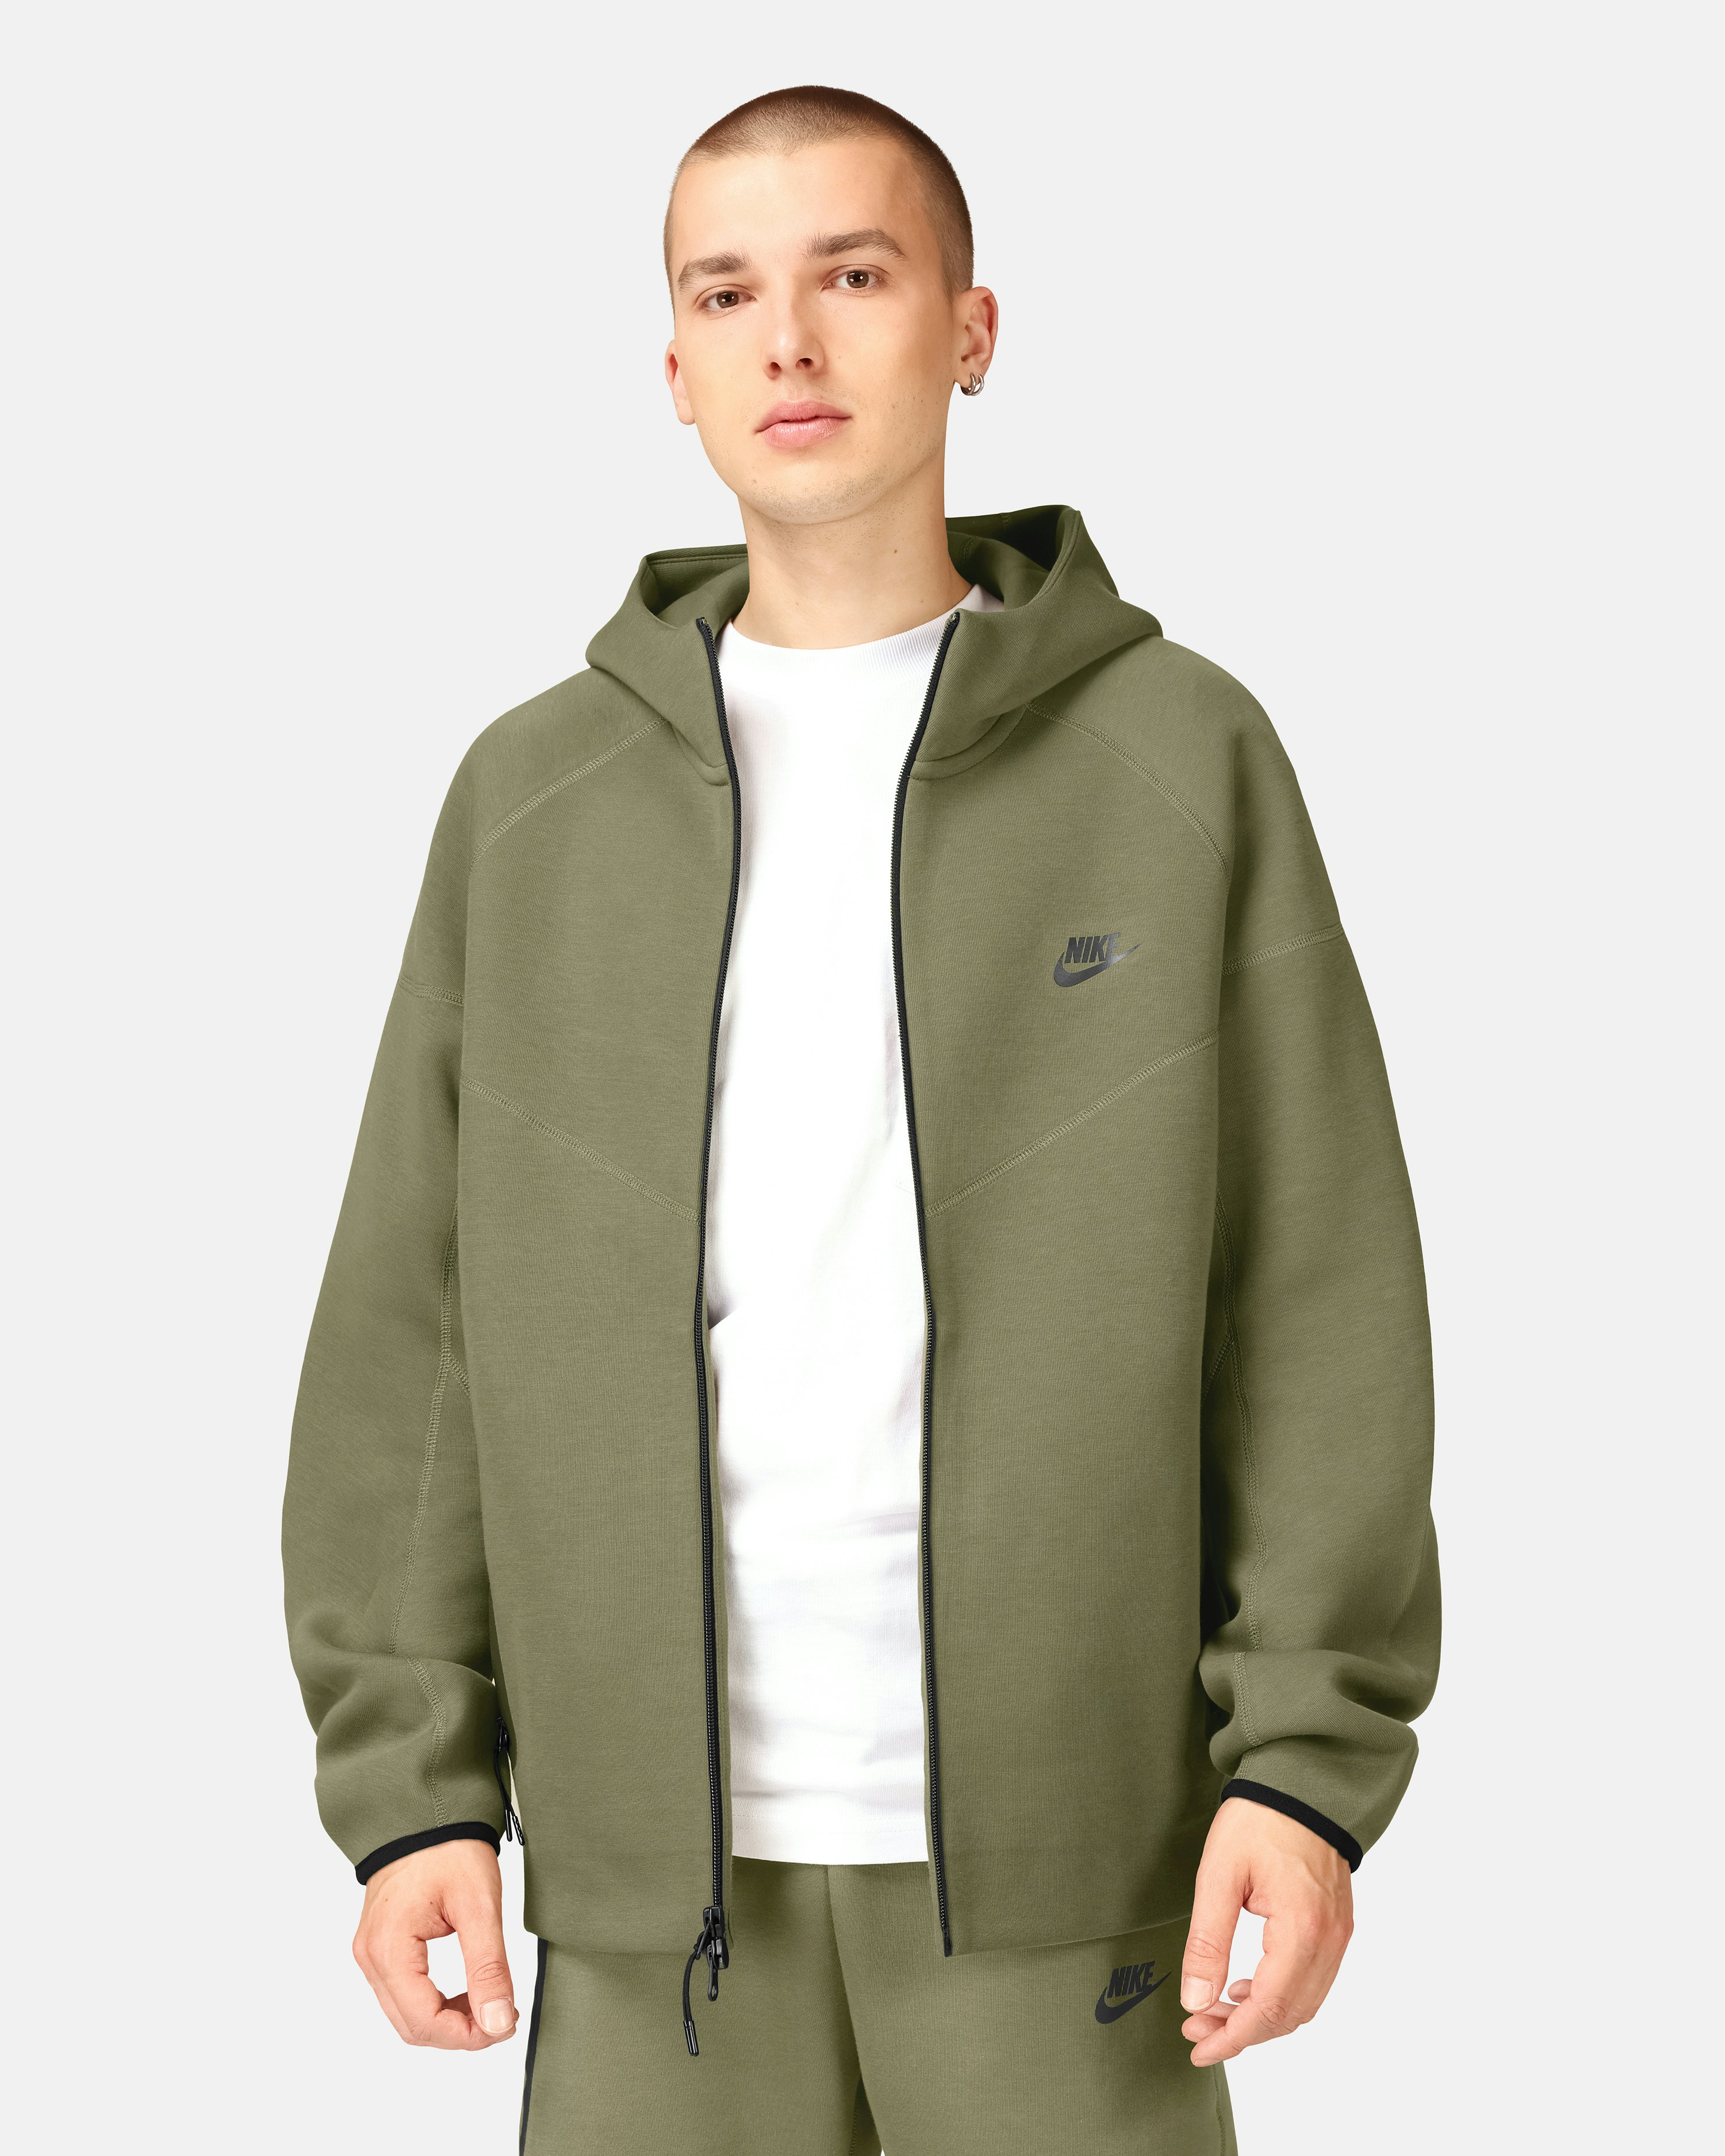 Nike Tech Fleece Jacket Olive green | Unisex | Junkyard